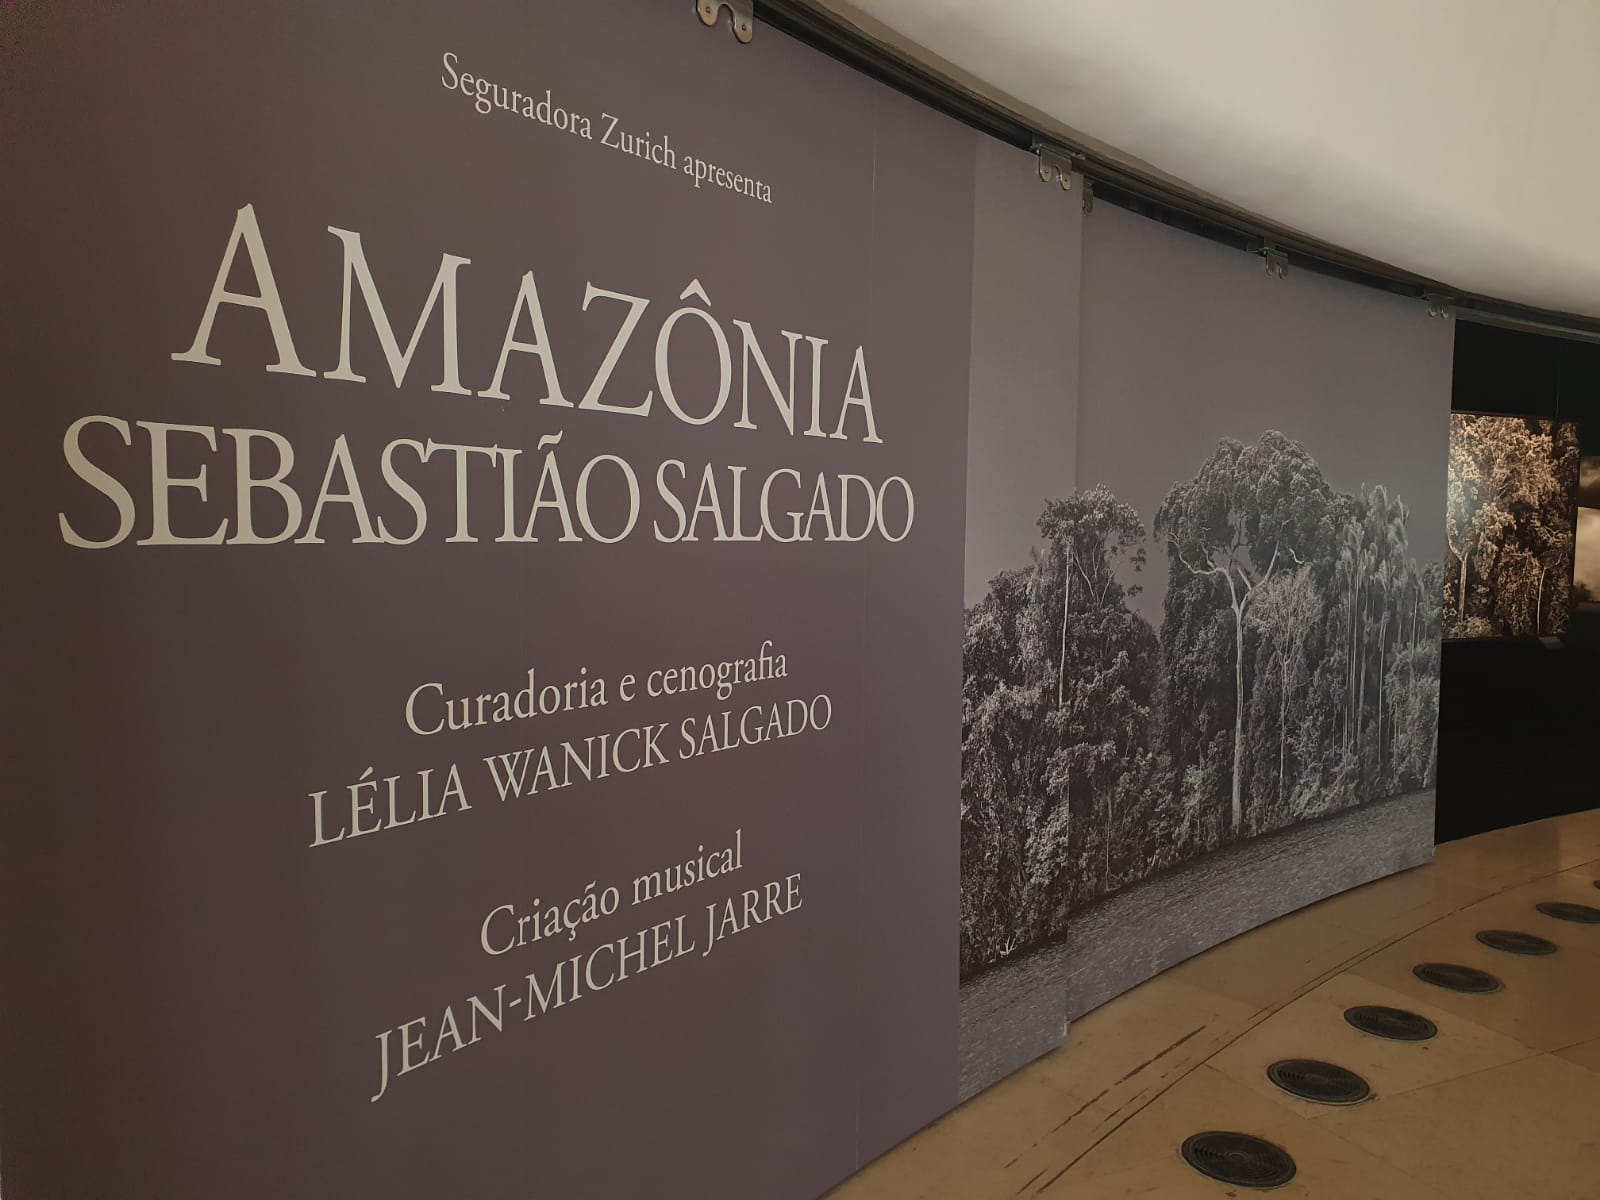 Exposição 'Amazônia', de Sebastião Salgado, chega ao Museu do Amanhã nesta terça